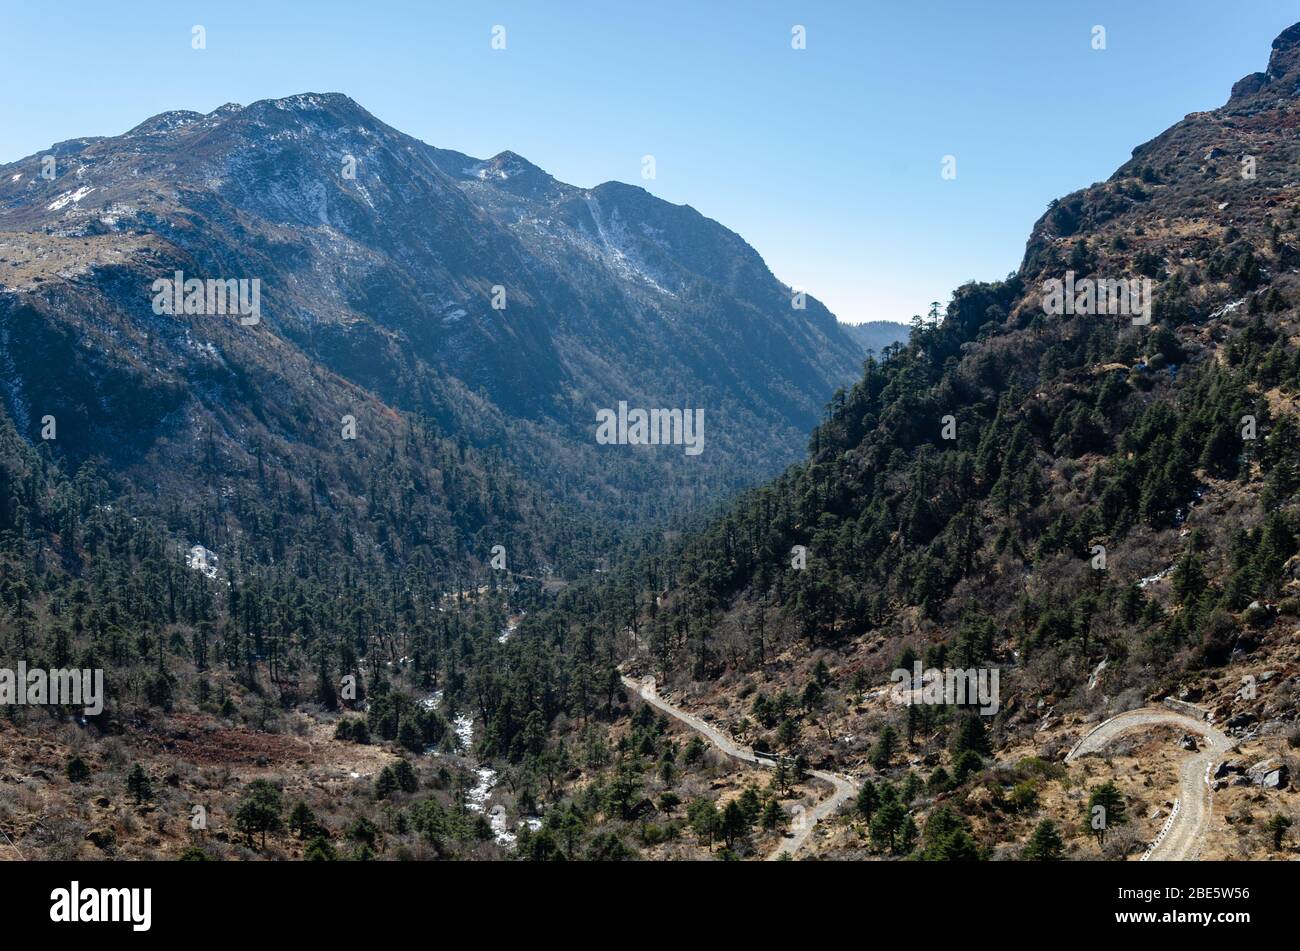 Belle vue sur le paysage montagneux et la vallée sous-jacente lors de votre voyage sur Nathu la Pass, Sikkim, Inde Banque D'Images